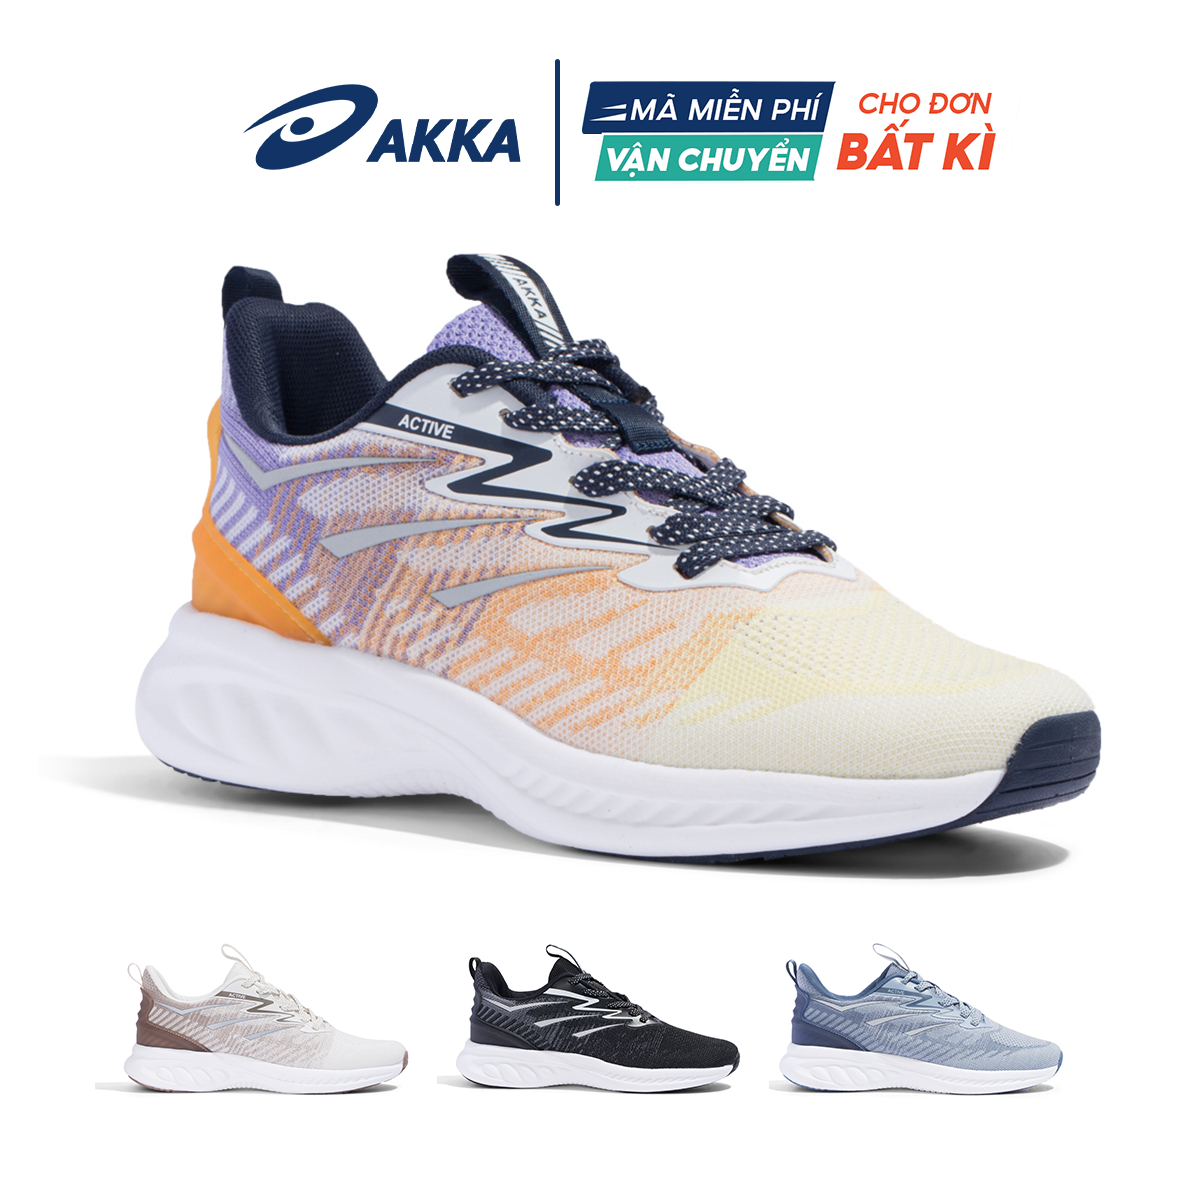 Giày thể thao chạy bộ chính hãng AKKA ACTIVE B2210